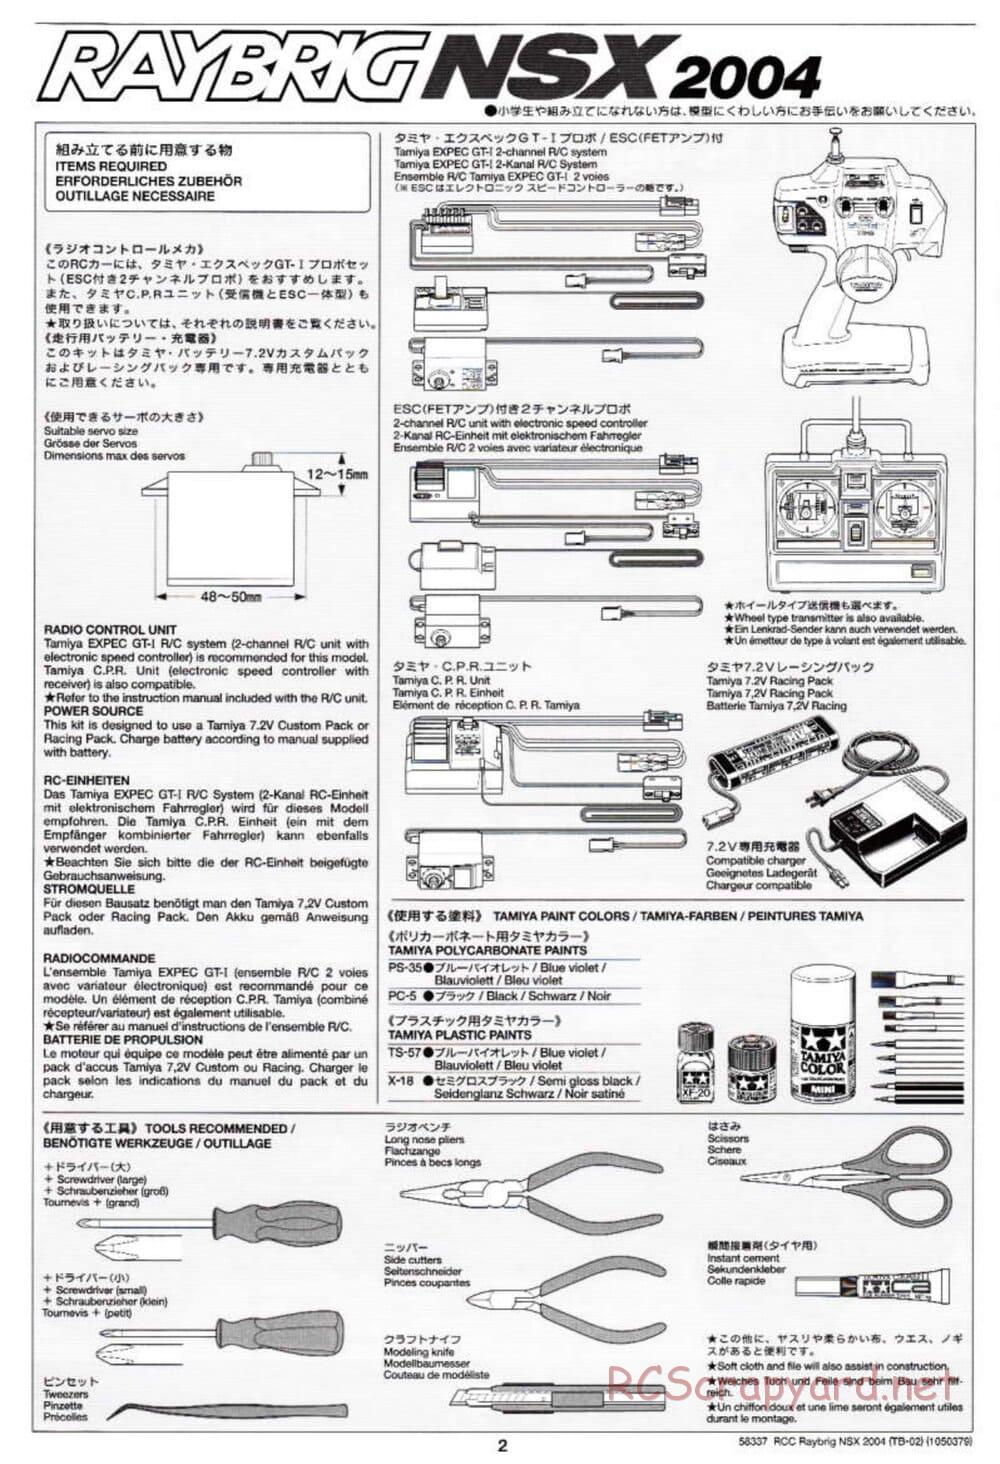 Tamiya - Raybrig NSX 2004 - TB-02 Chassis - Manual - Page 2